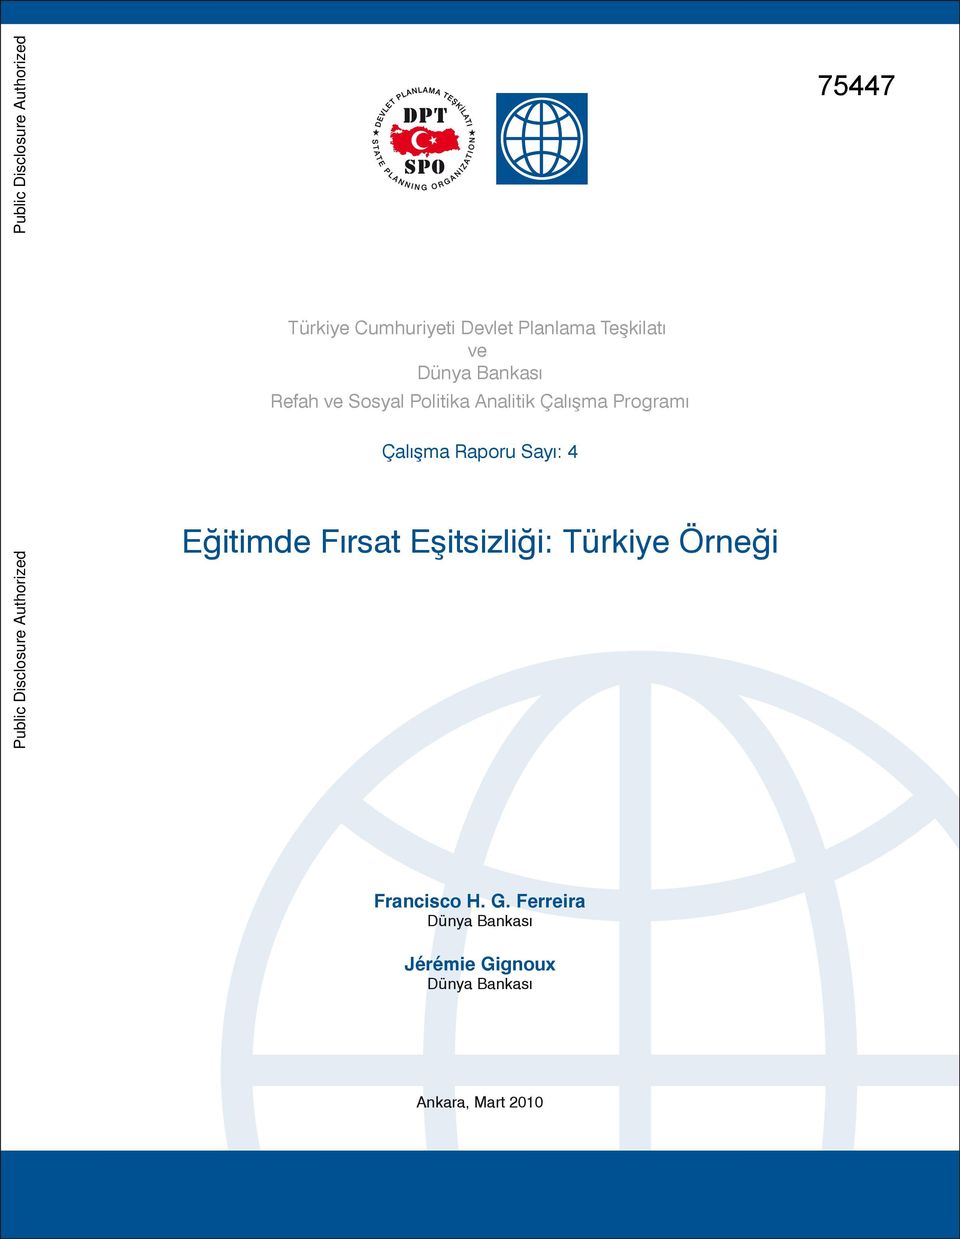 Çalışma Programı Çalışma Raporu Sayı: 4 Eğitimde Fırsat Eşitsizliği: Türkiye Örneği Public